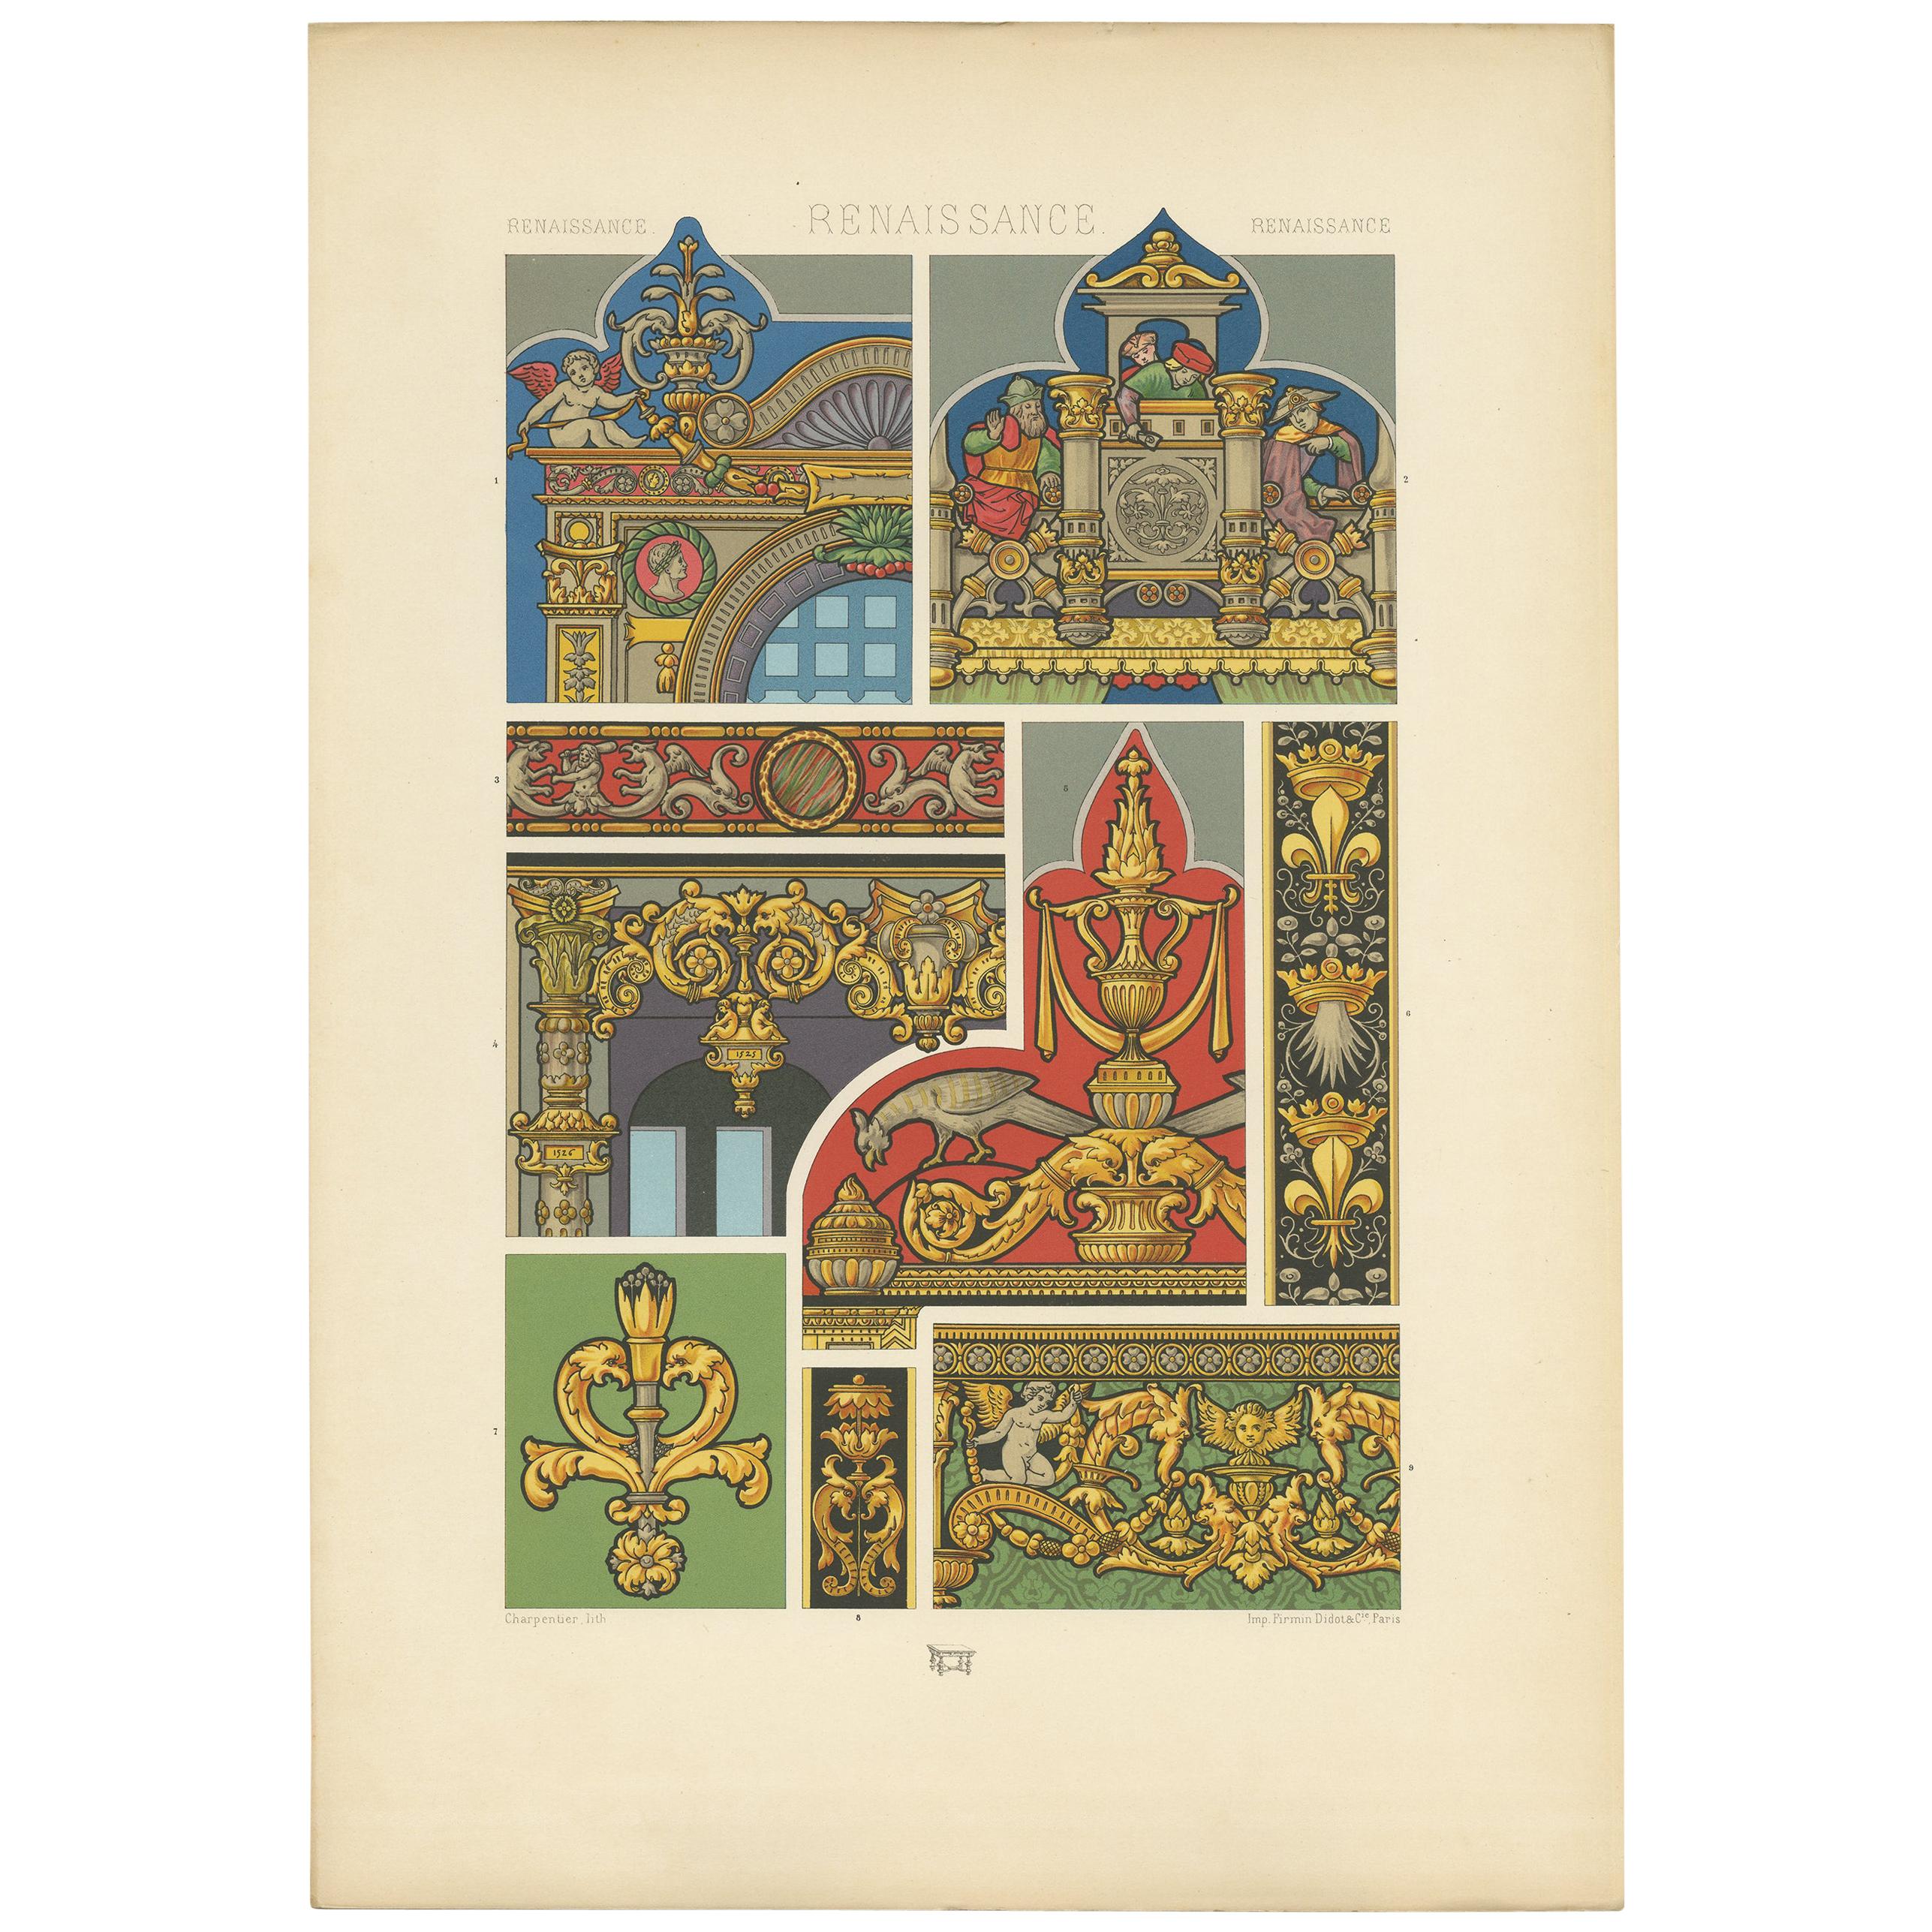 Pl. 85 Antique Print of Renaissance Architectural Motifs by Racinet 'circa 1890'